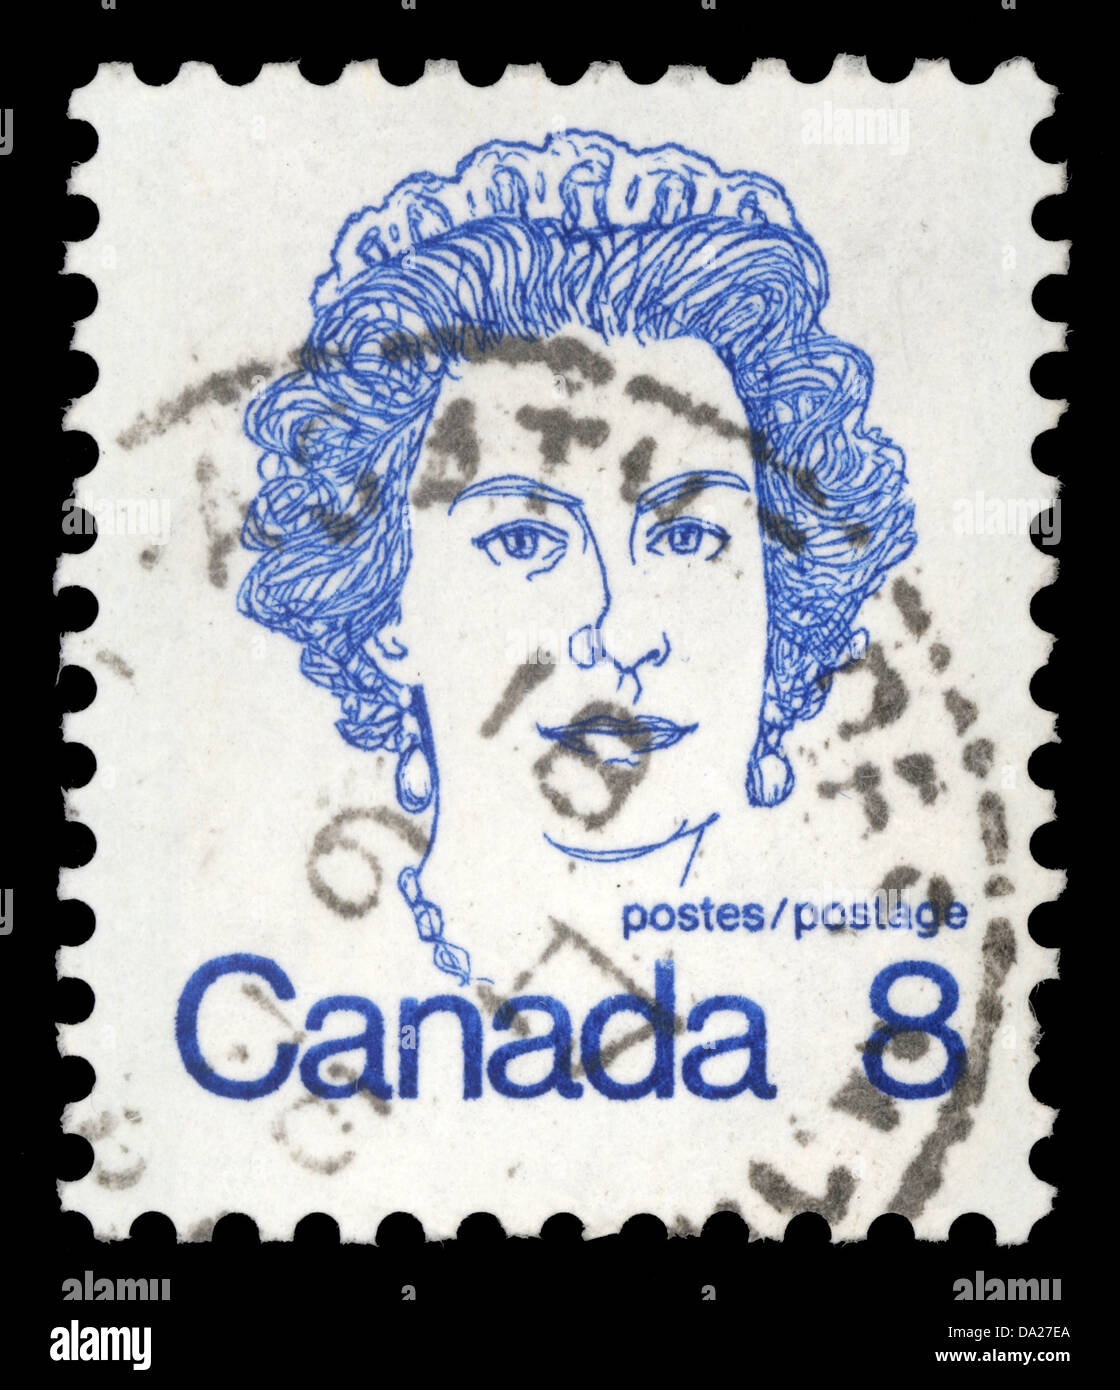 CANADA - VERS 1972 : timbre imprimé au Canada montre la reine Elizabeth II, vers 1972 Banque D'Images